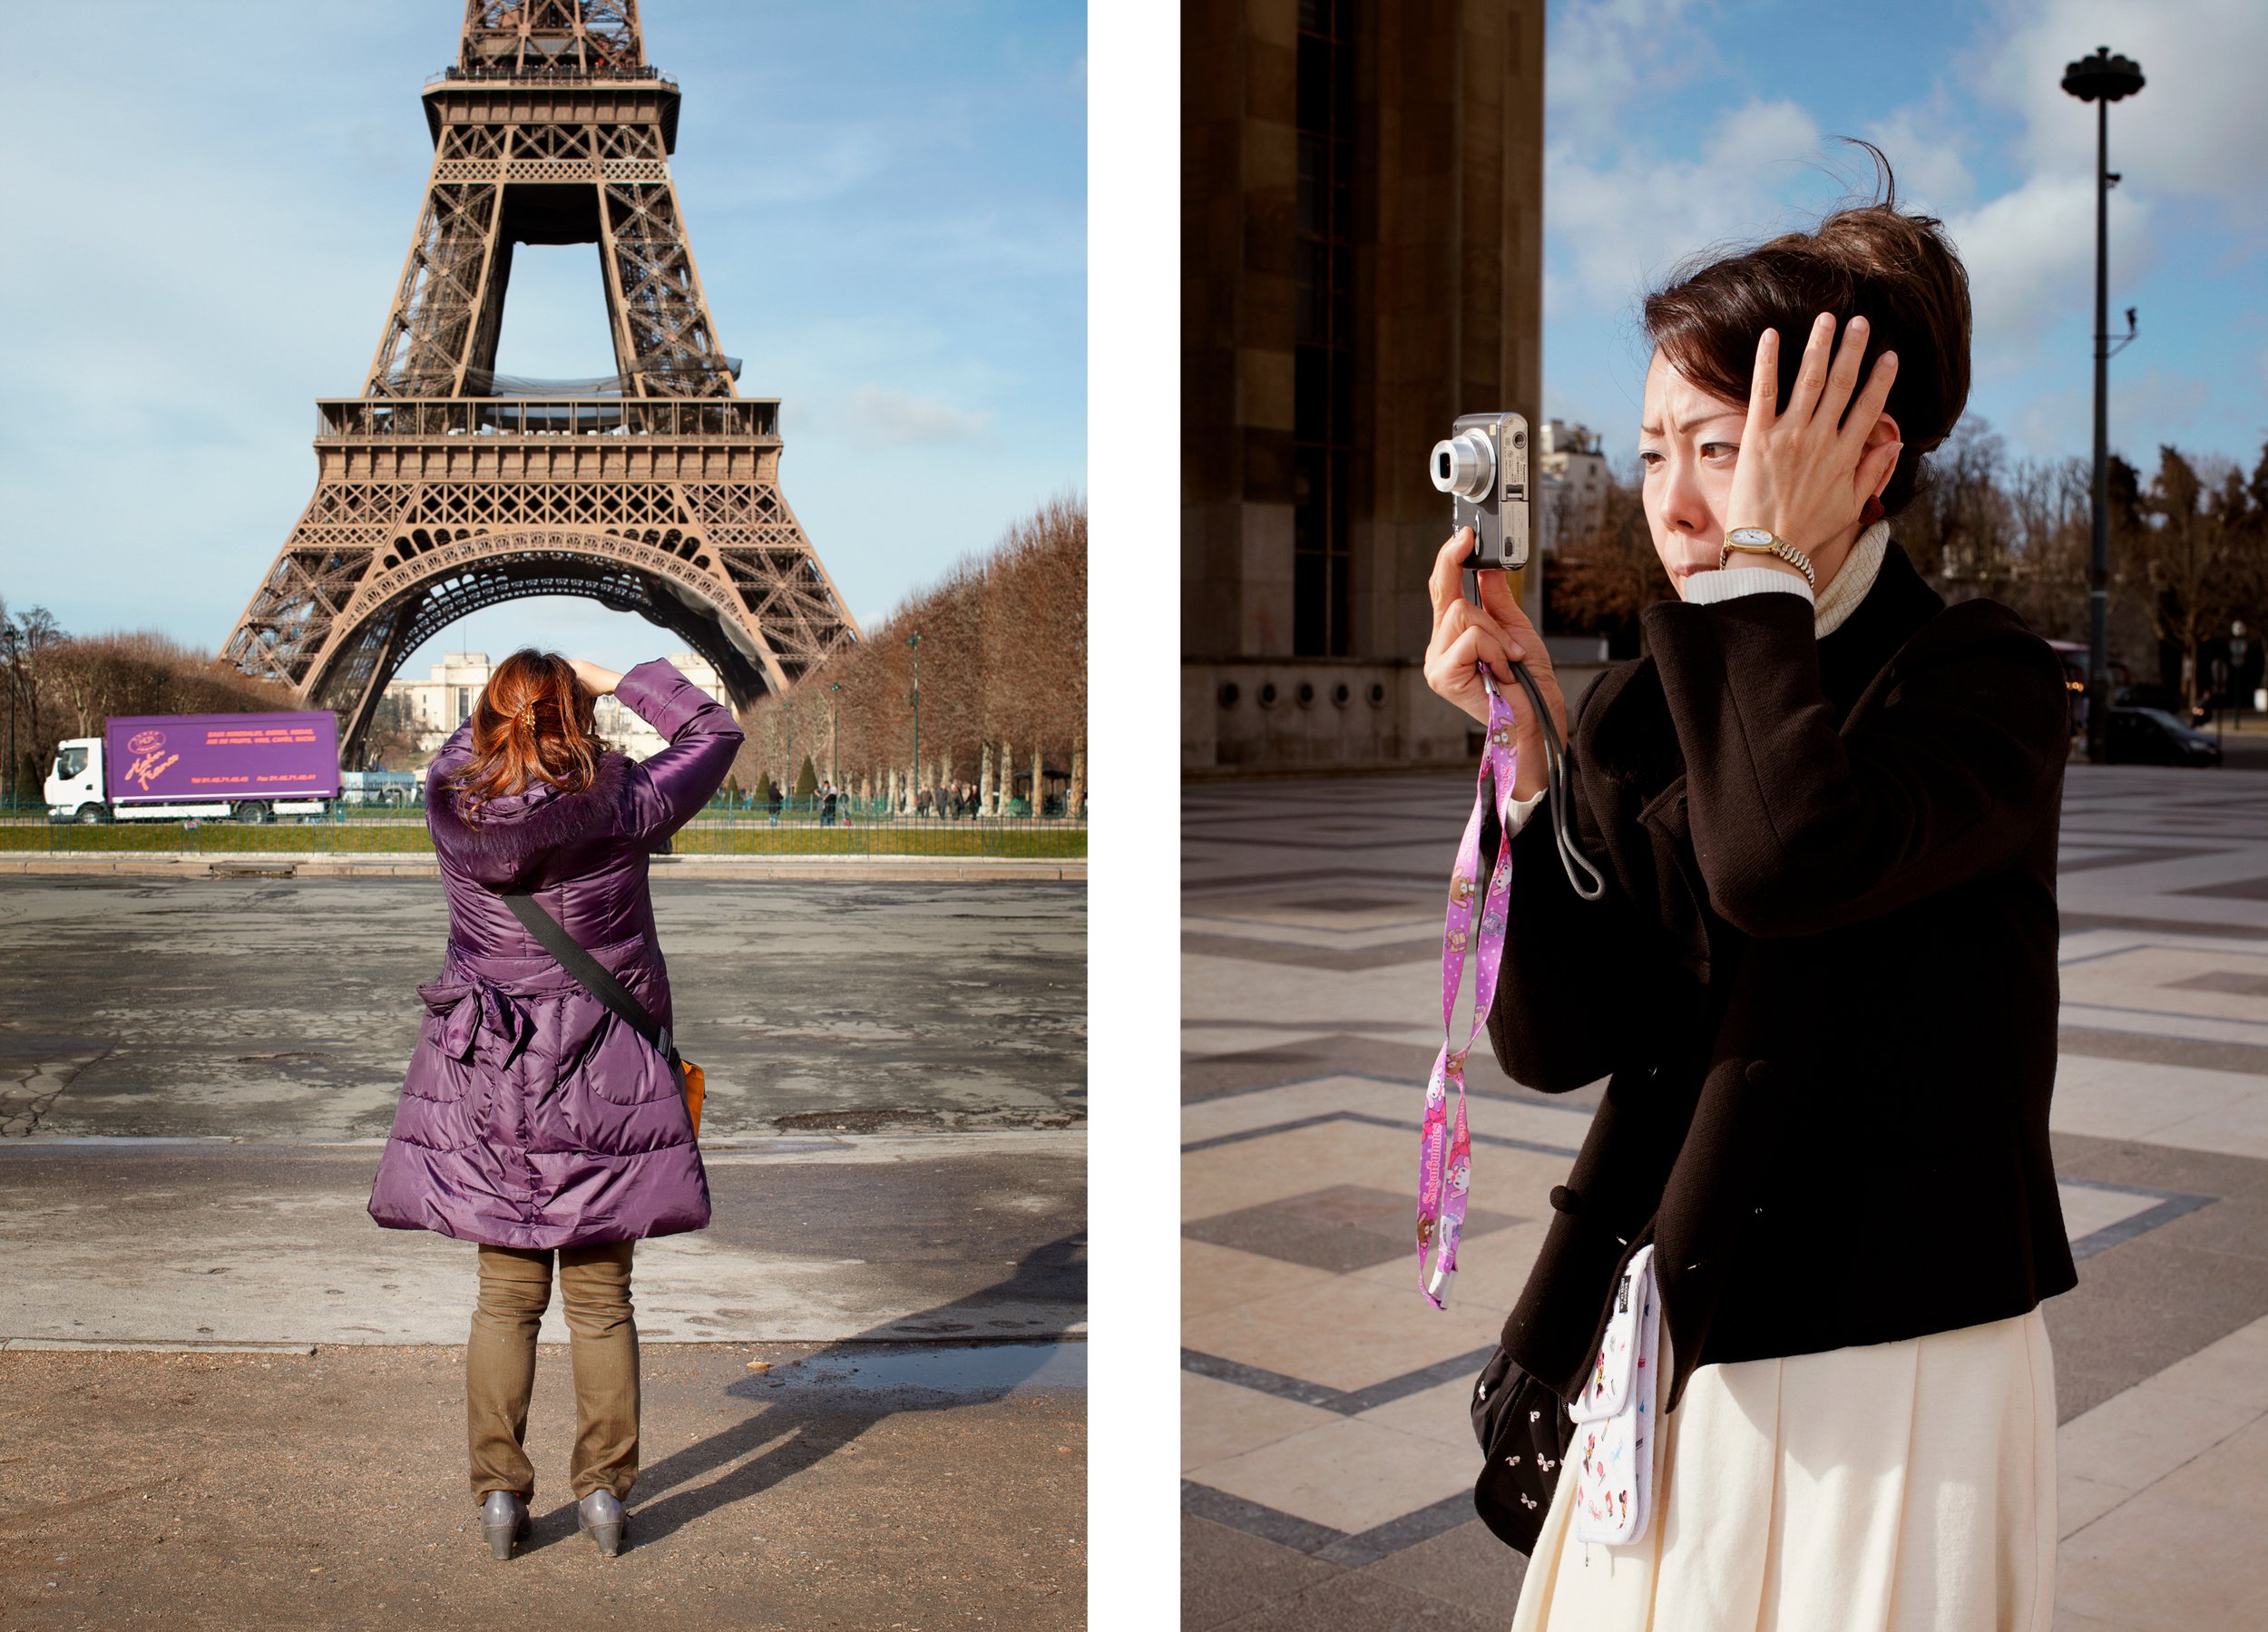   Shooting Tourists / Paris  